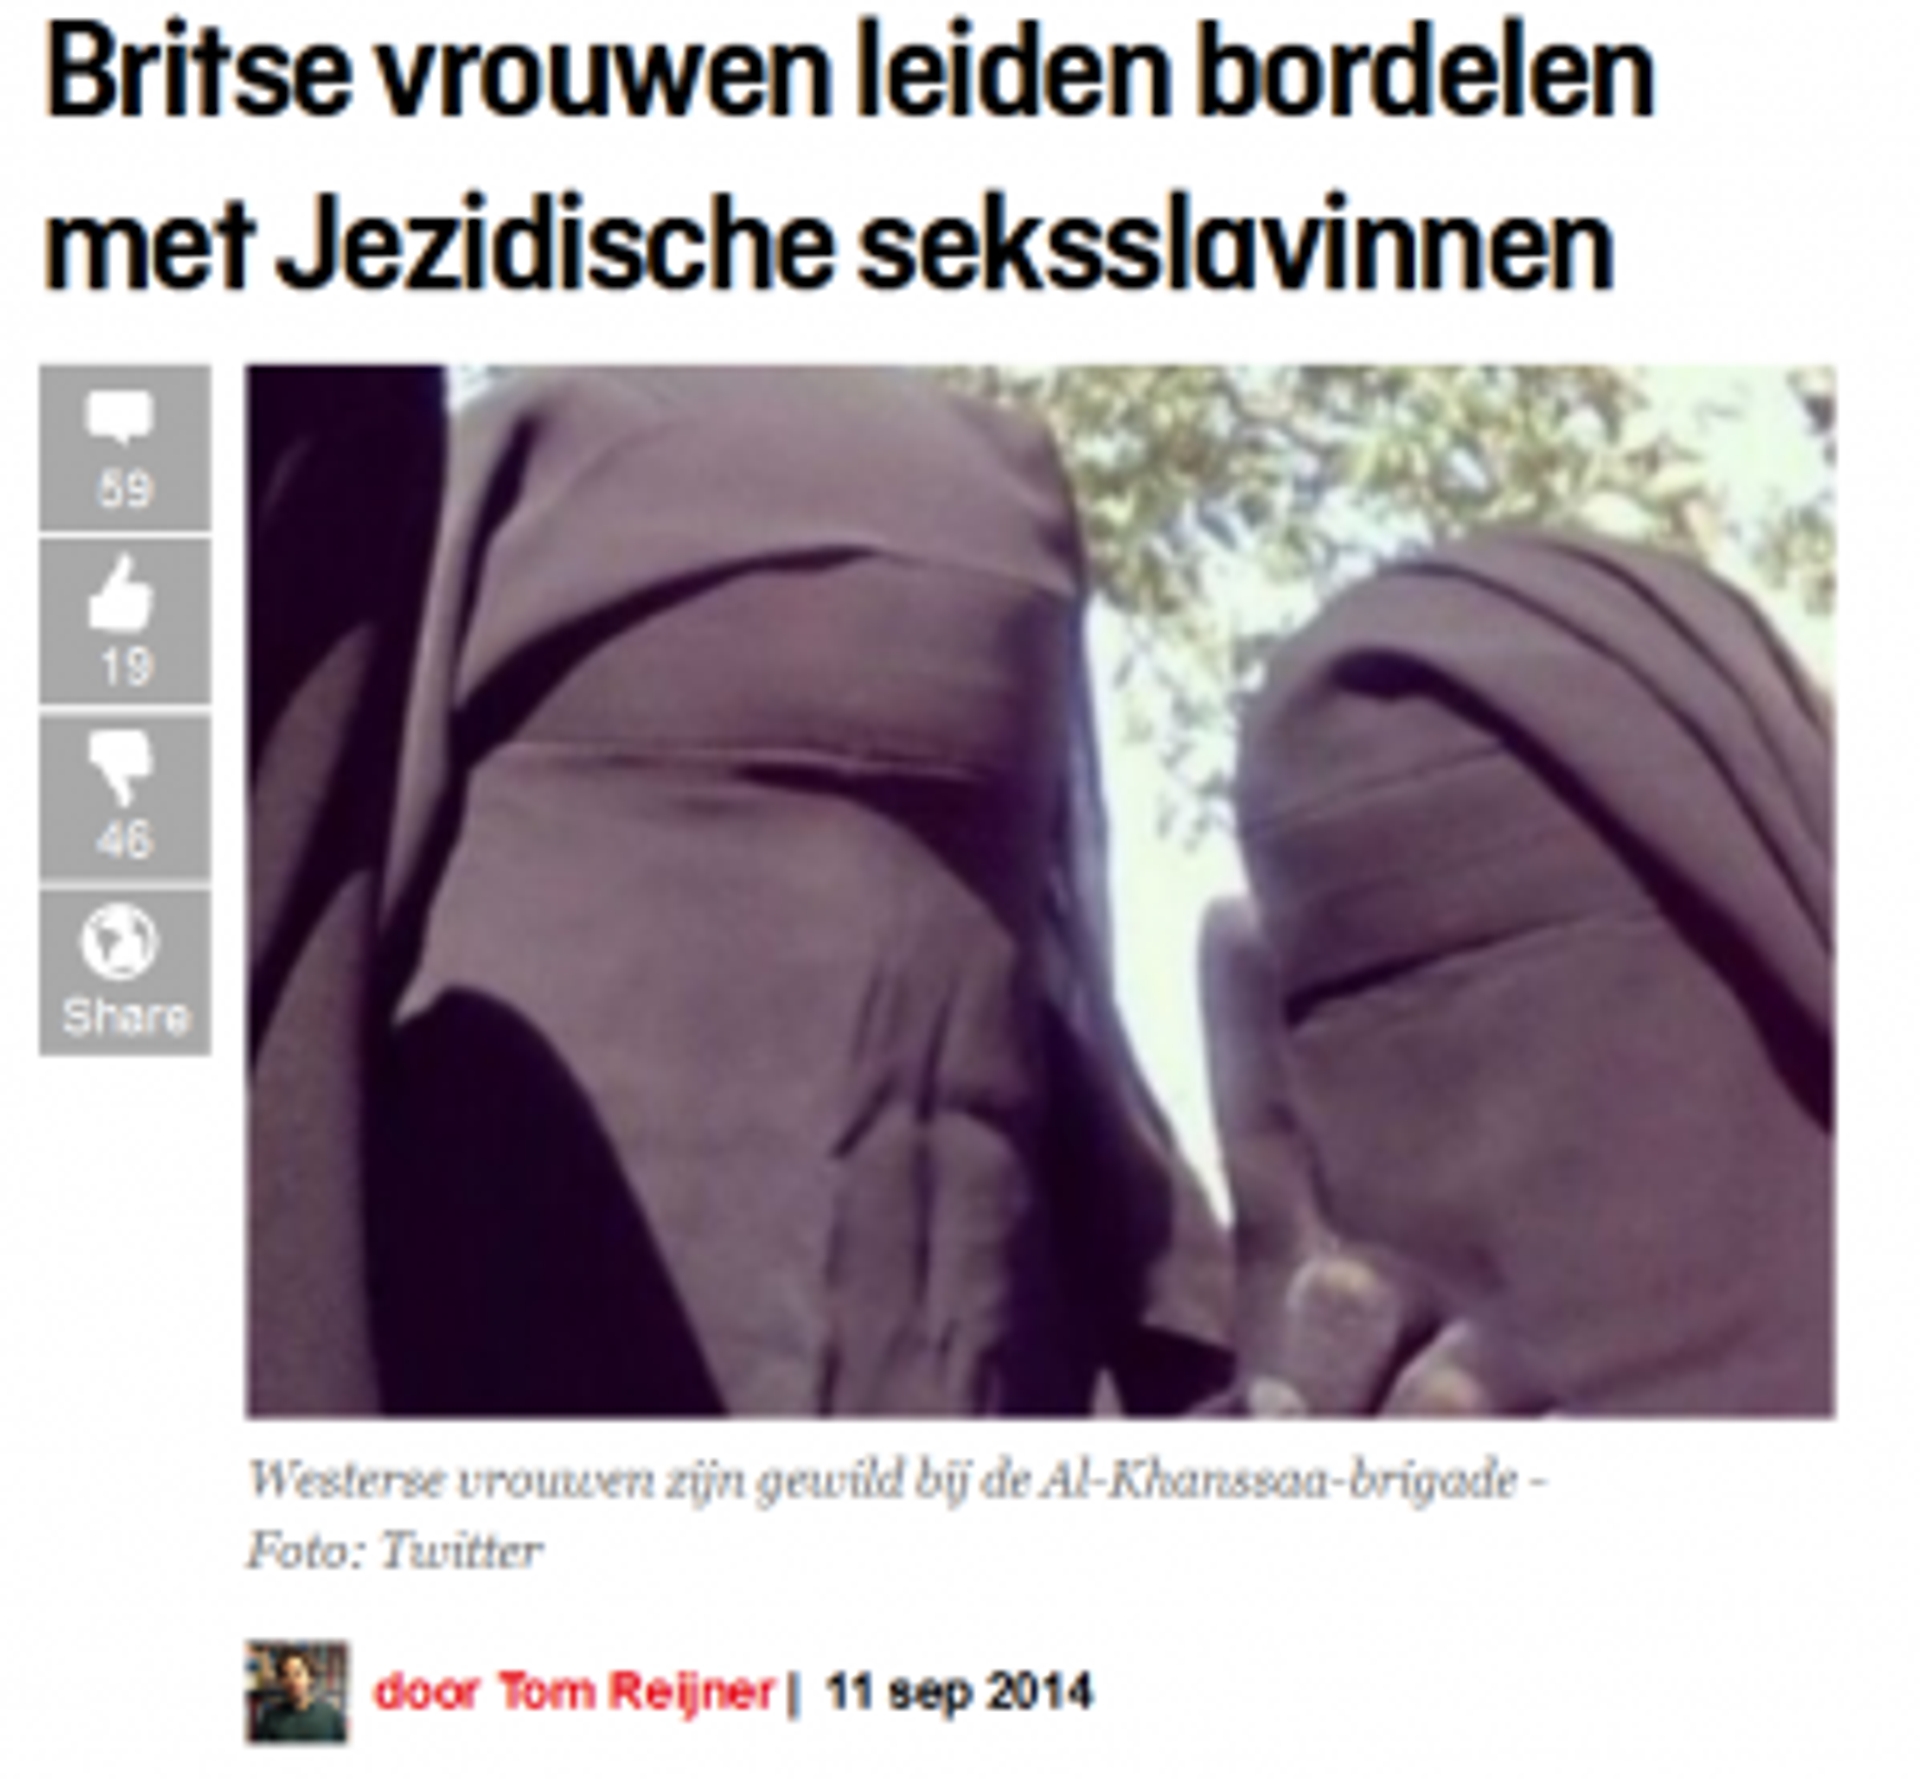 RTEmagicC_Elsevier-11-september-2014-Britse-vrouwen-leiden-bordelen-met-Jezidische-seksslavinnen-300x278.png